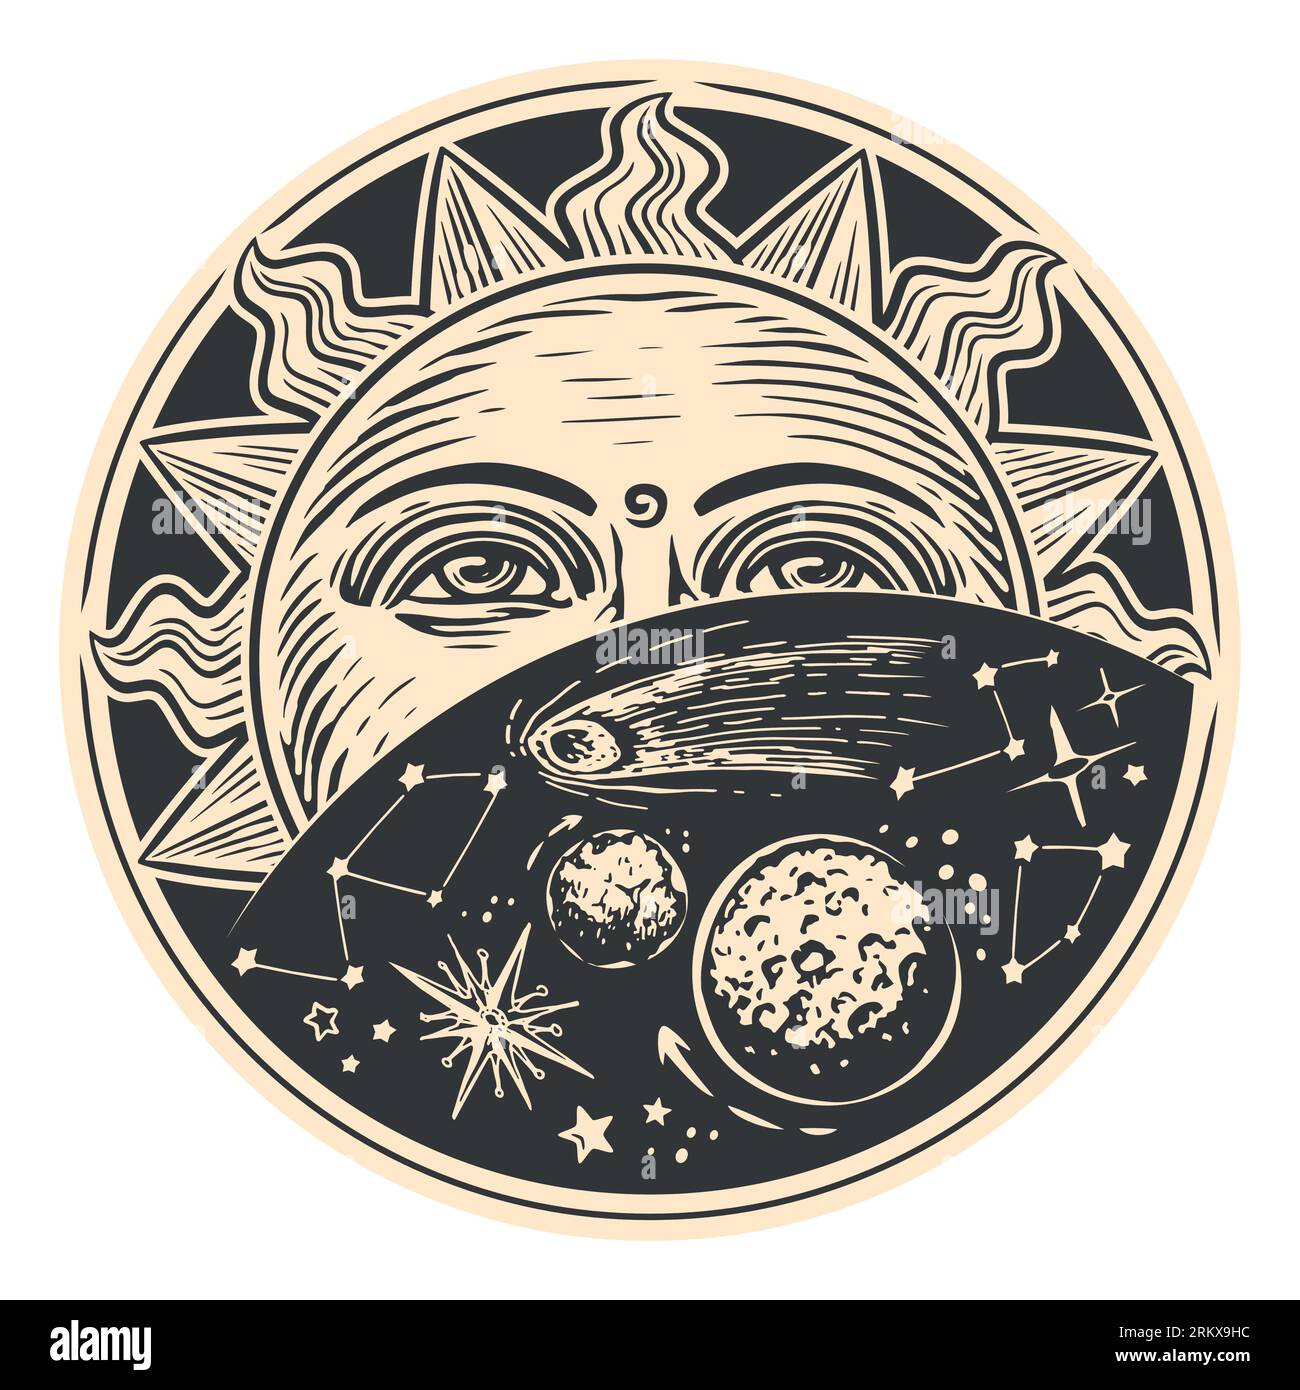 Soleil et étoiles dans l'espace. Concept astrologique. Illustration vectorielle dans le style de gravure vintage Illustration de Vecteur